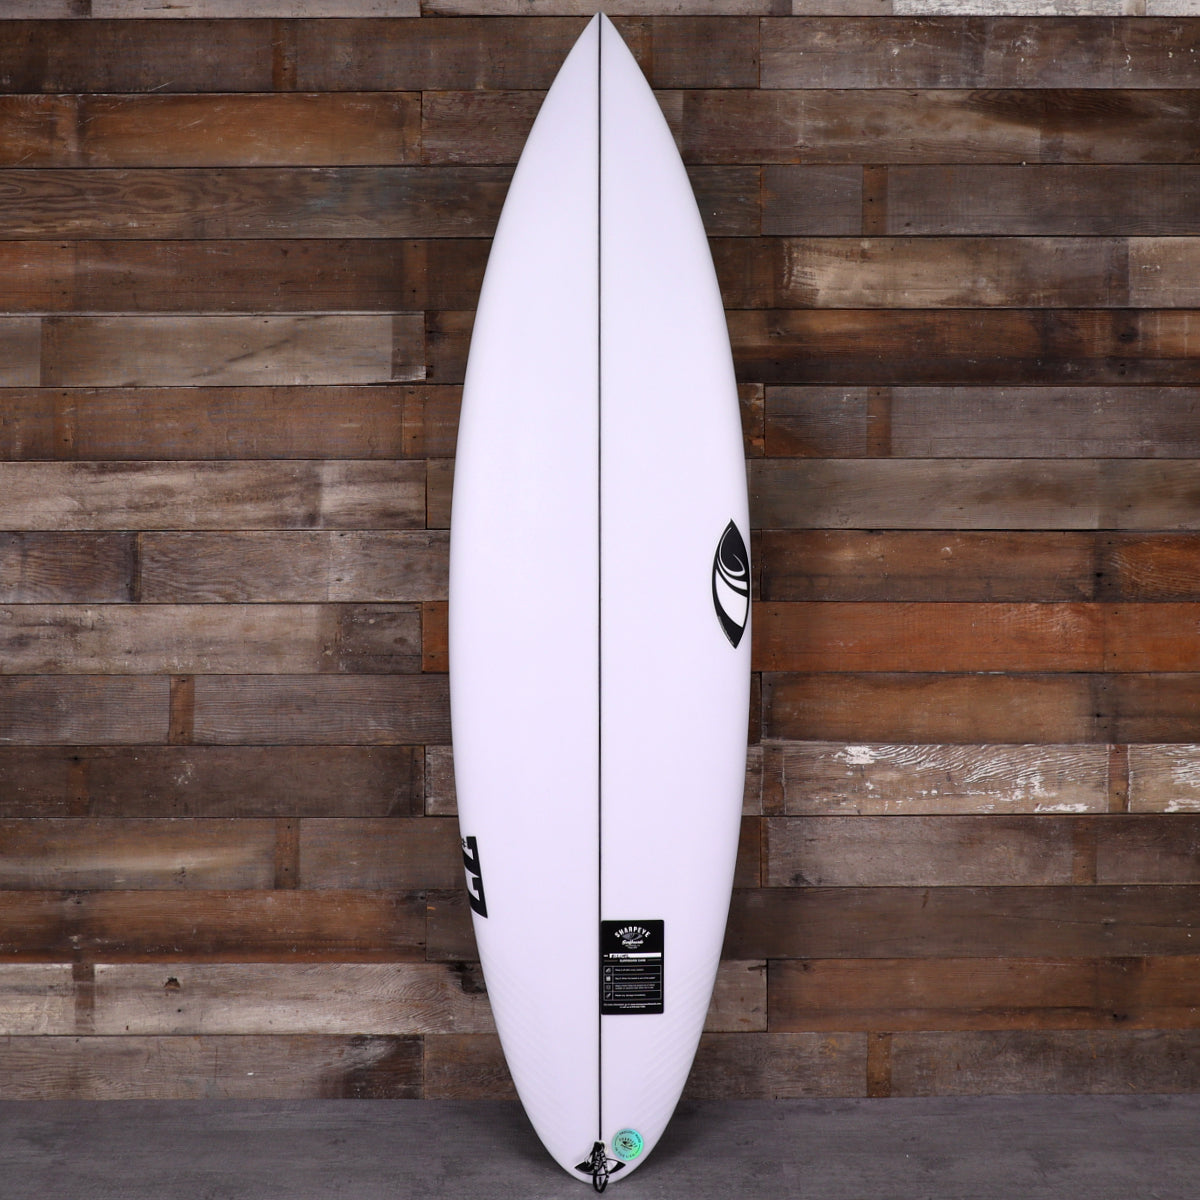 Sharp Eye #77 6'2 x 19 ½ x 2 ⅗ Surfboard